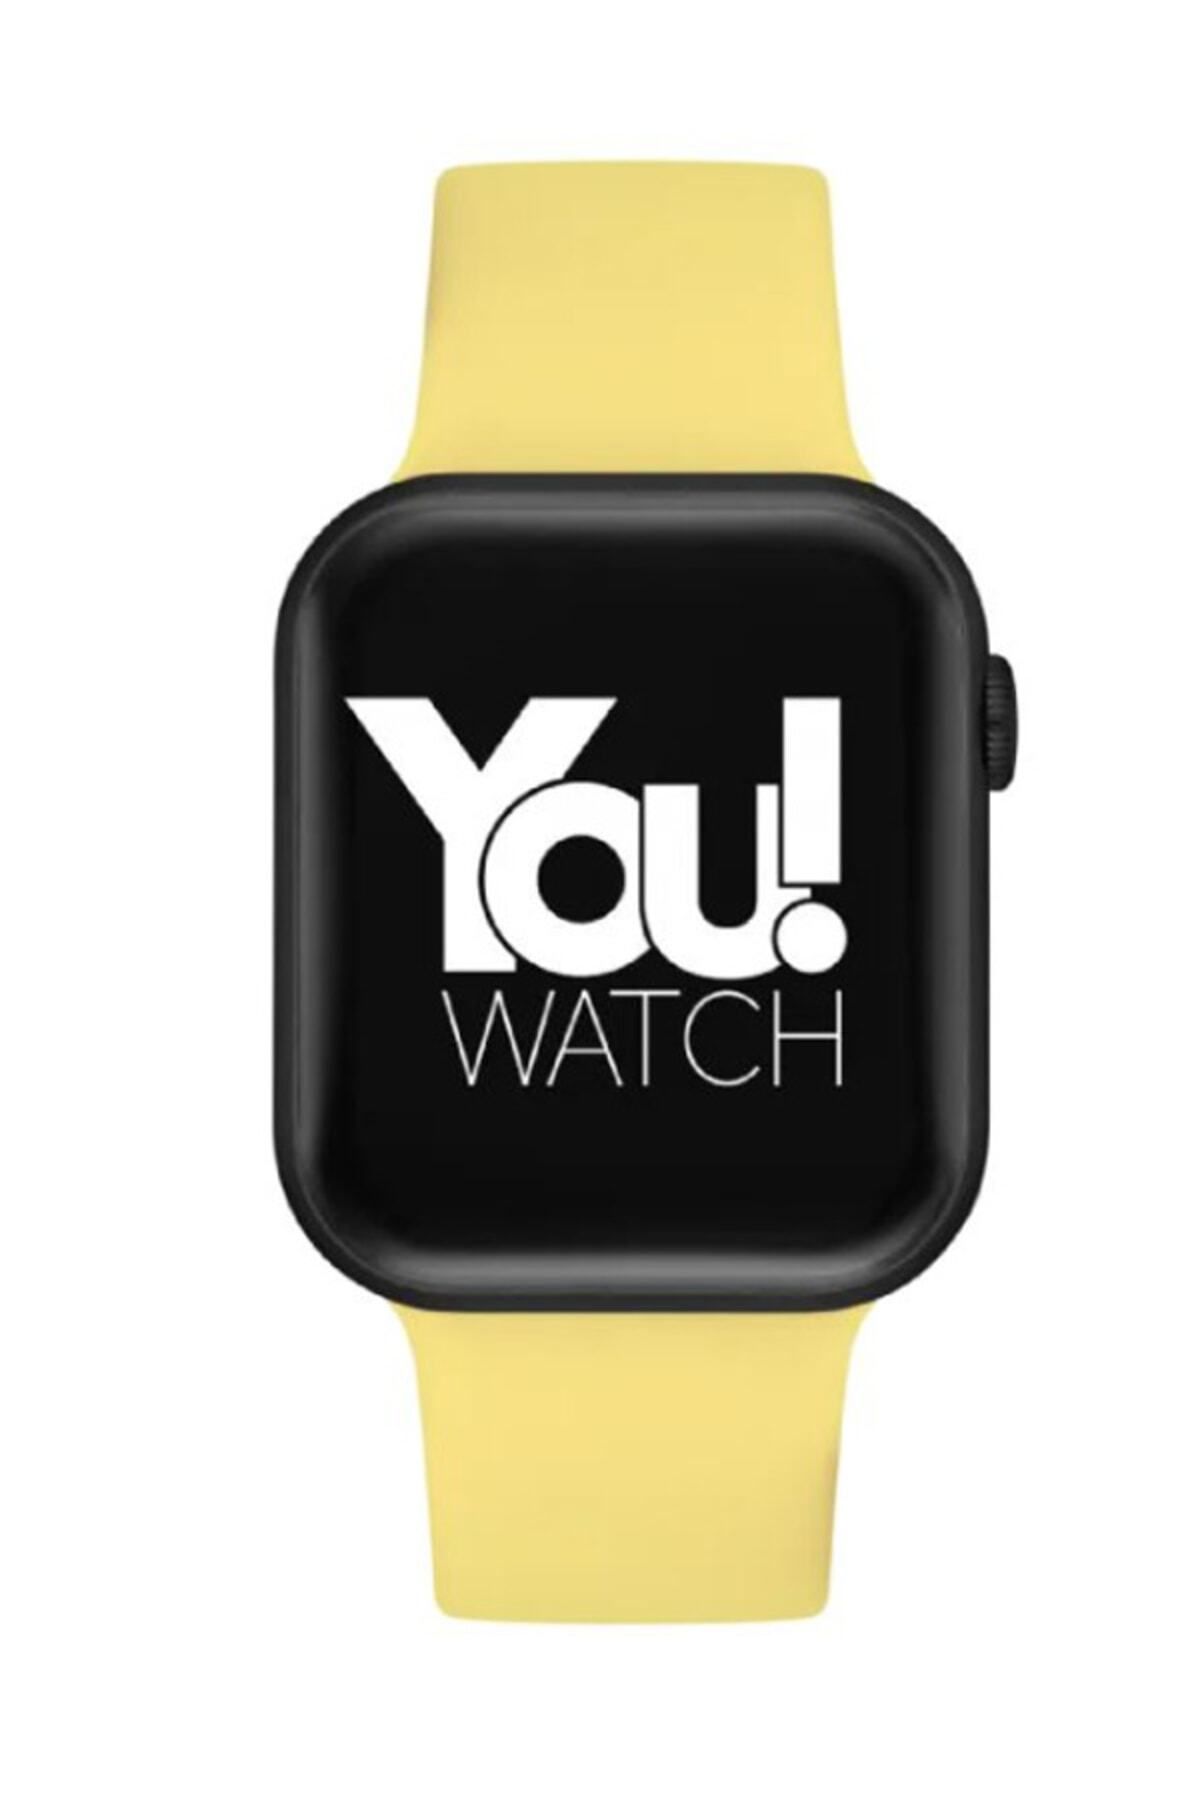 You Watch Youwatch F3-yf305 Siyah Kasa Sarı Silikon Kordon Unisex Akıllı Kol Saati Bileklik Hediyeli